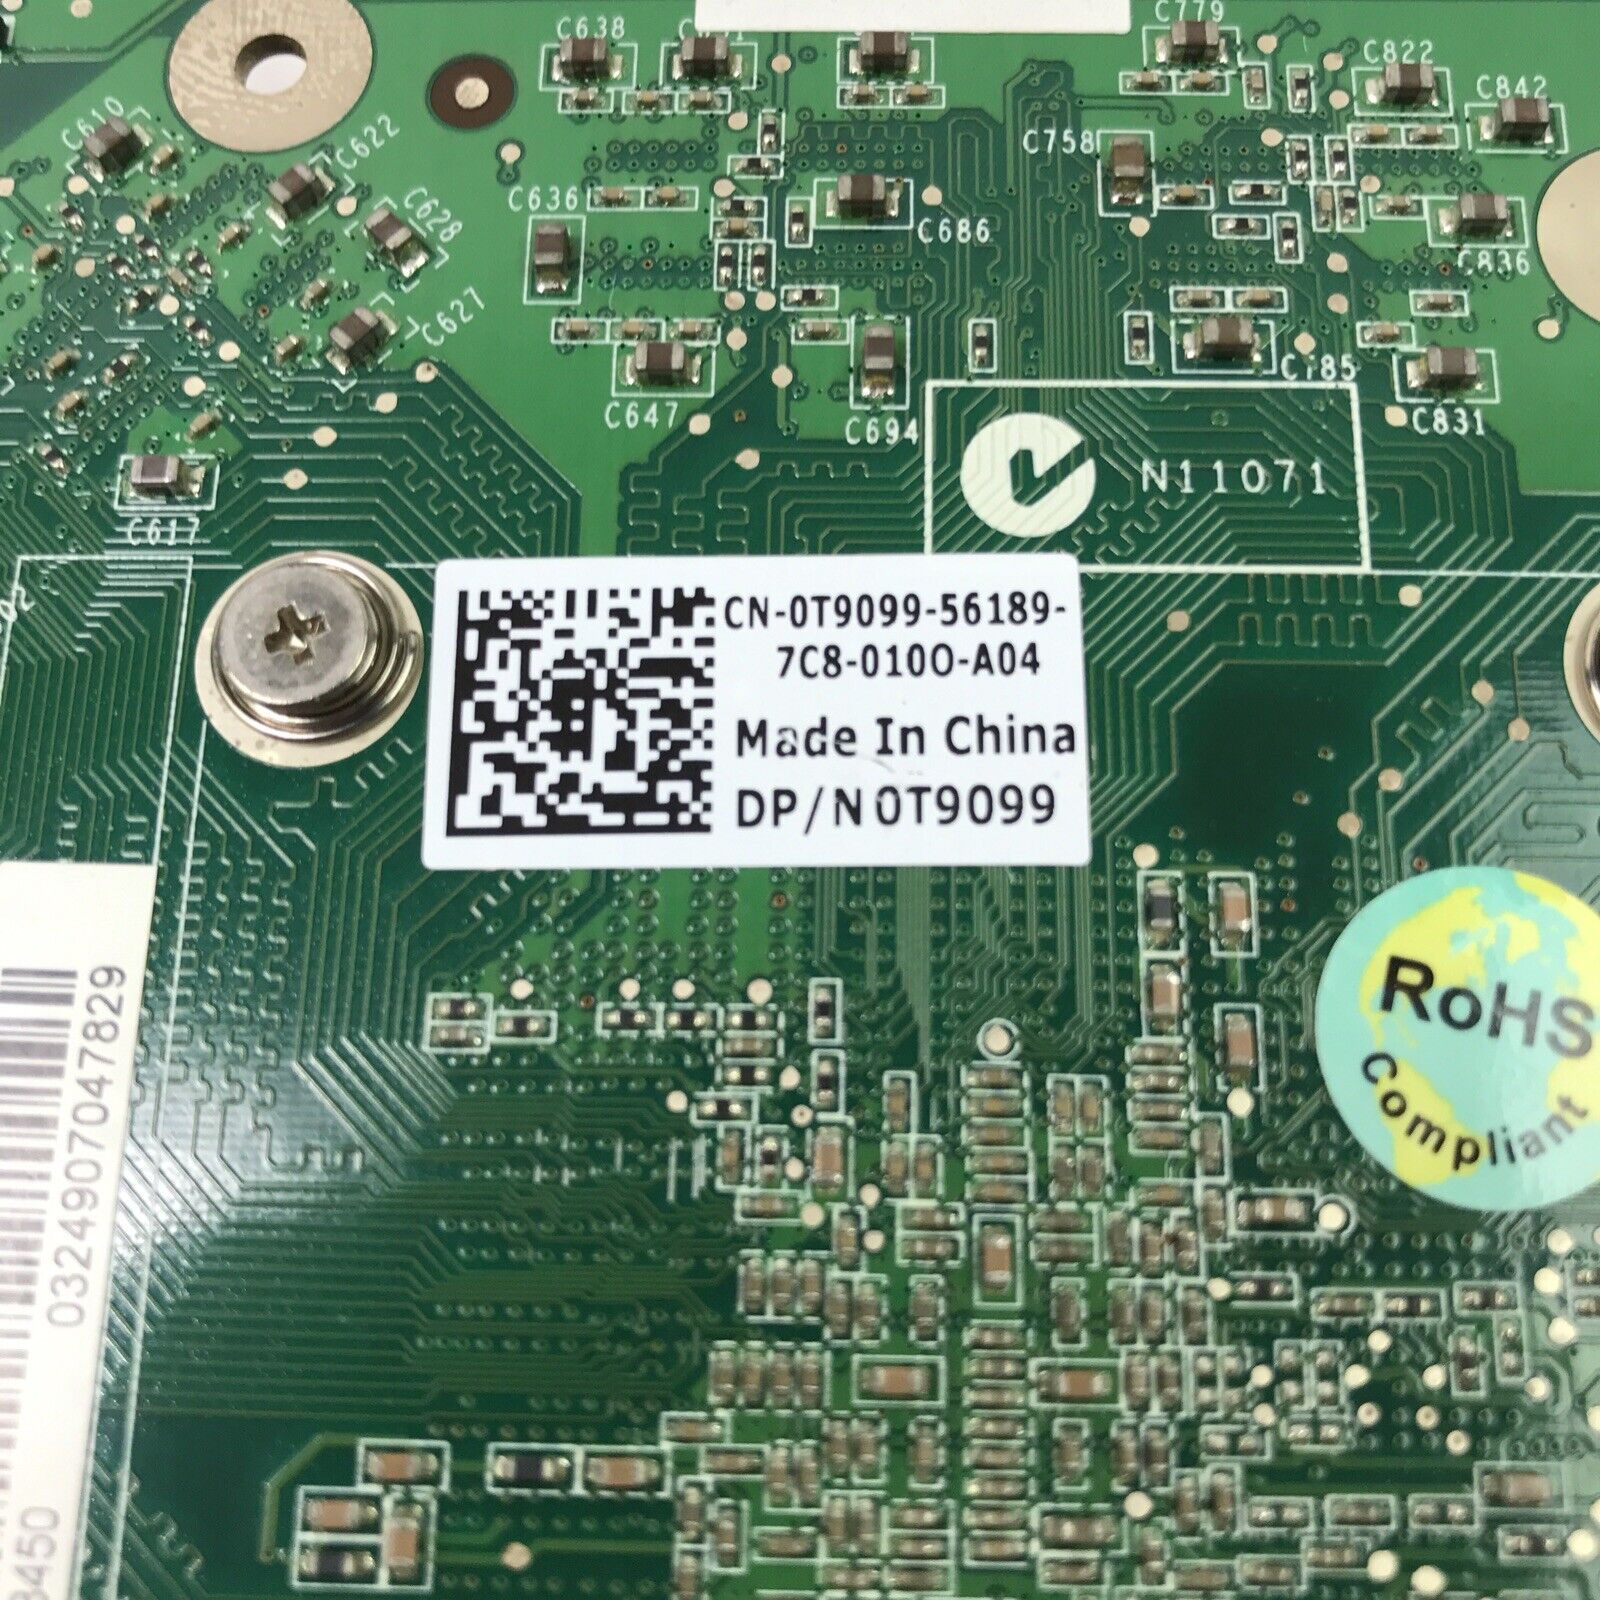 Nvidia Quadro FX 3450 0T9099 256MB PCI-e Dual DVI Video Card (Lot of 2